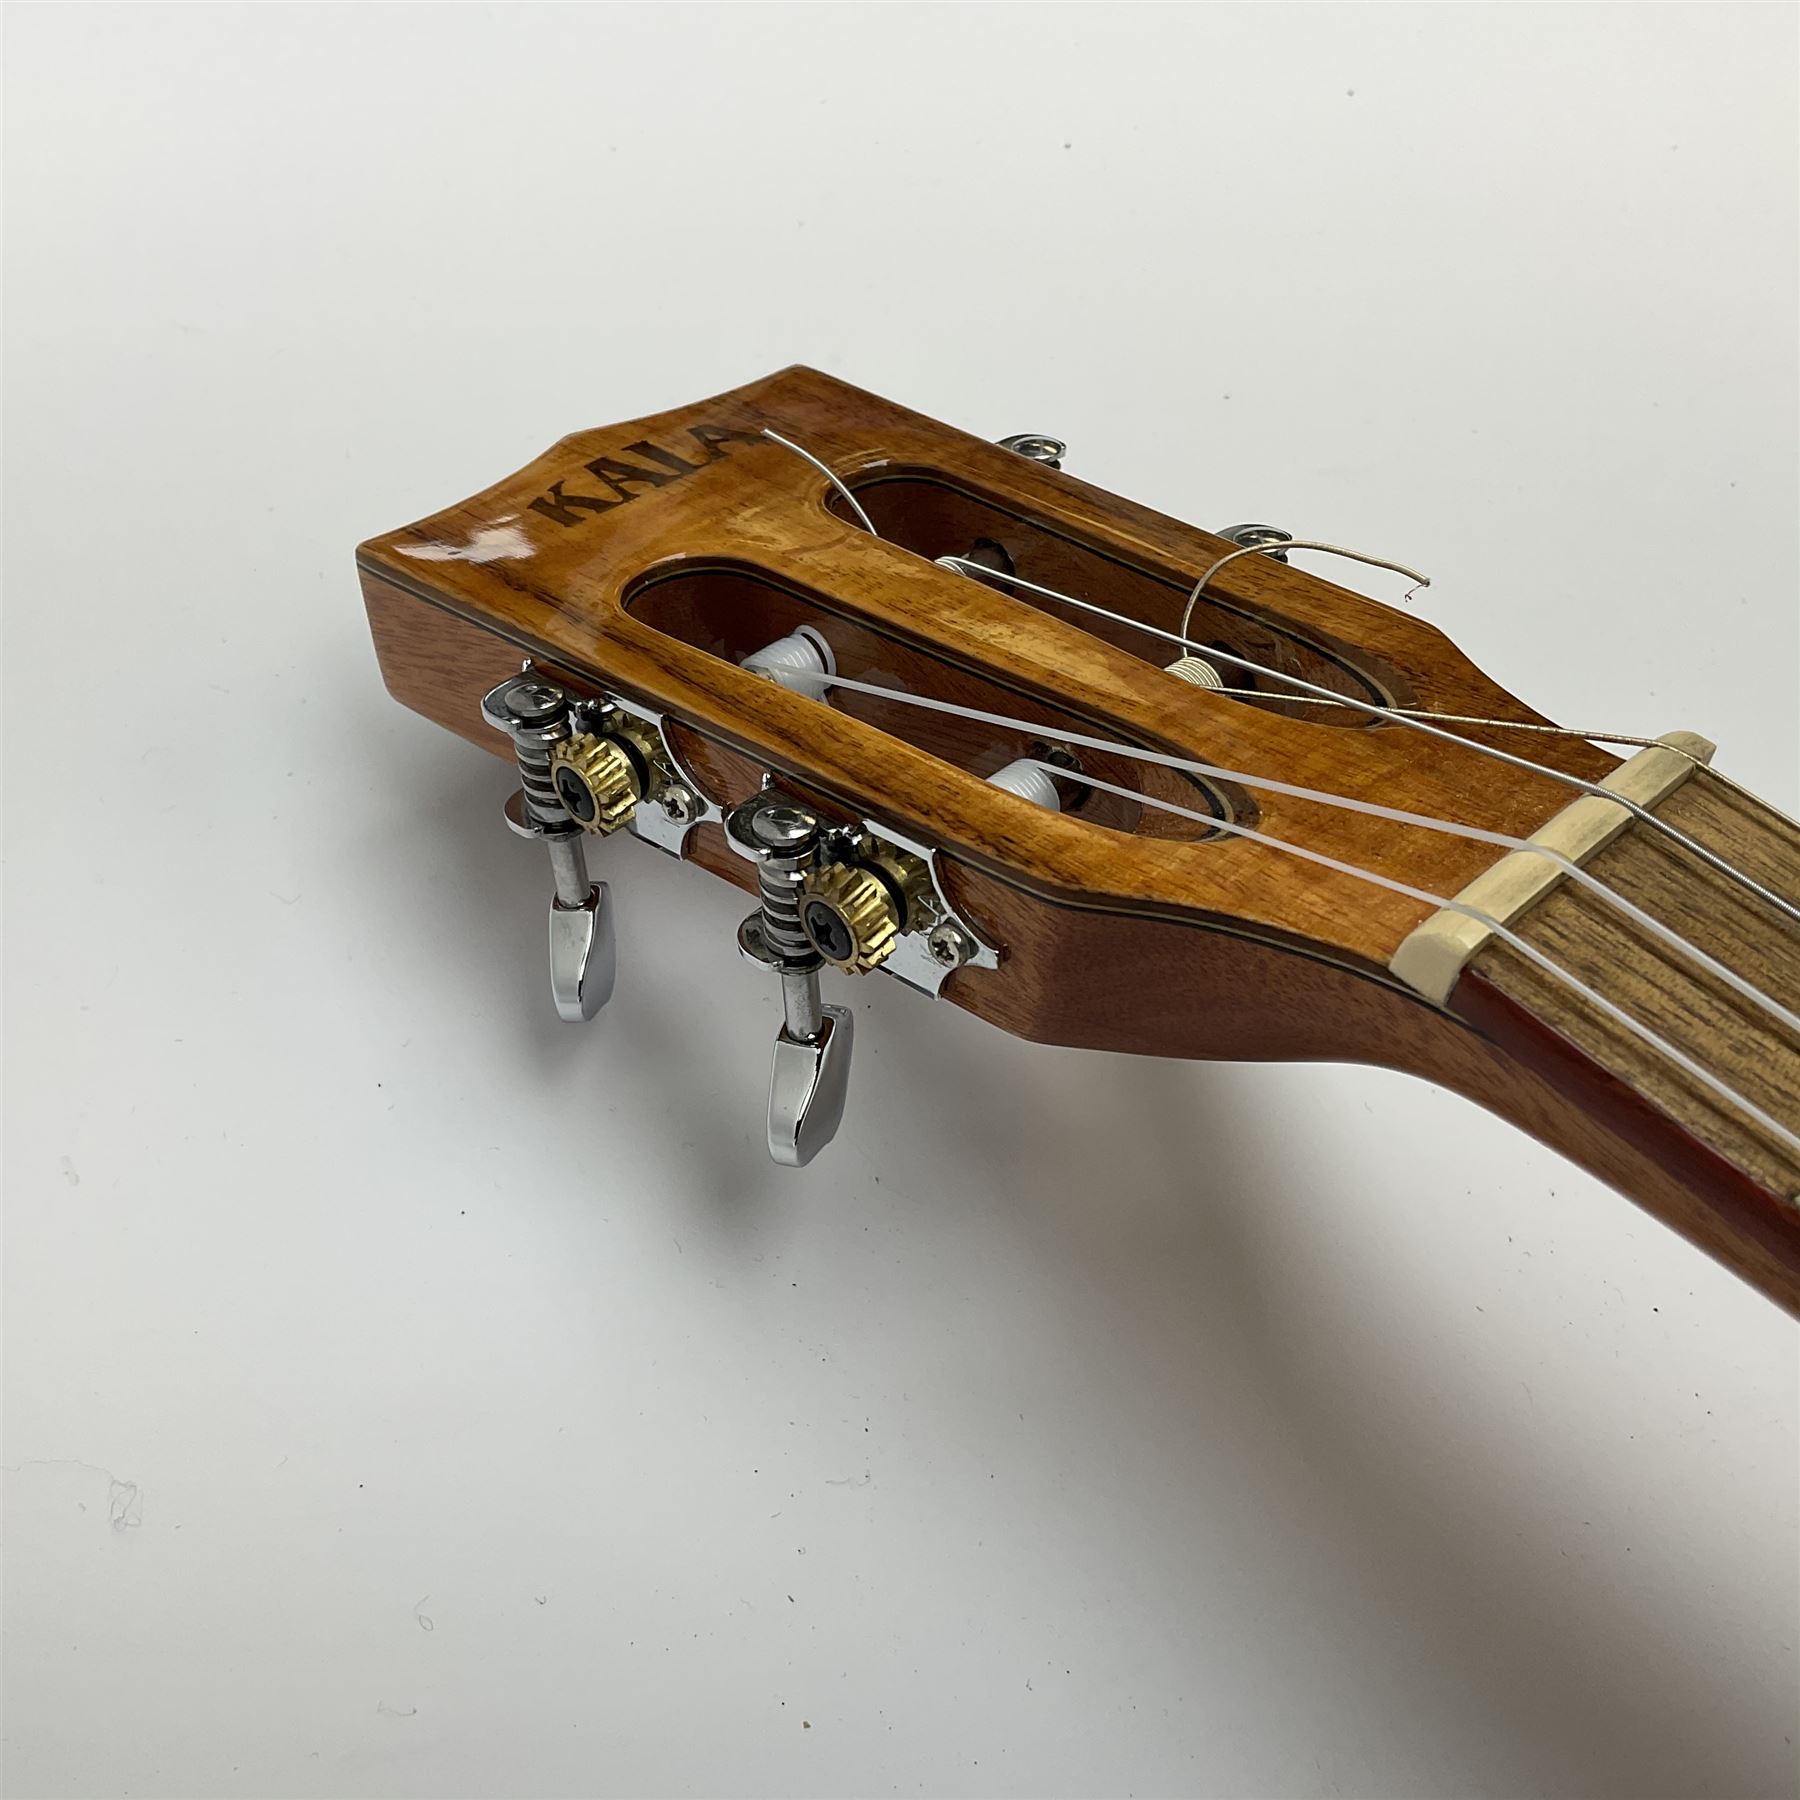 Modern Kala ukulele with acacia back and sides - Image 6 of 12